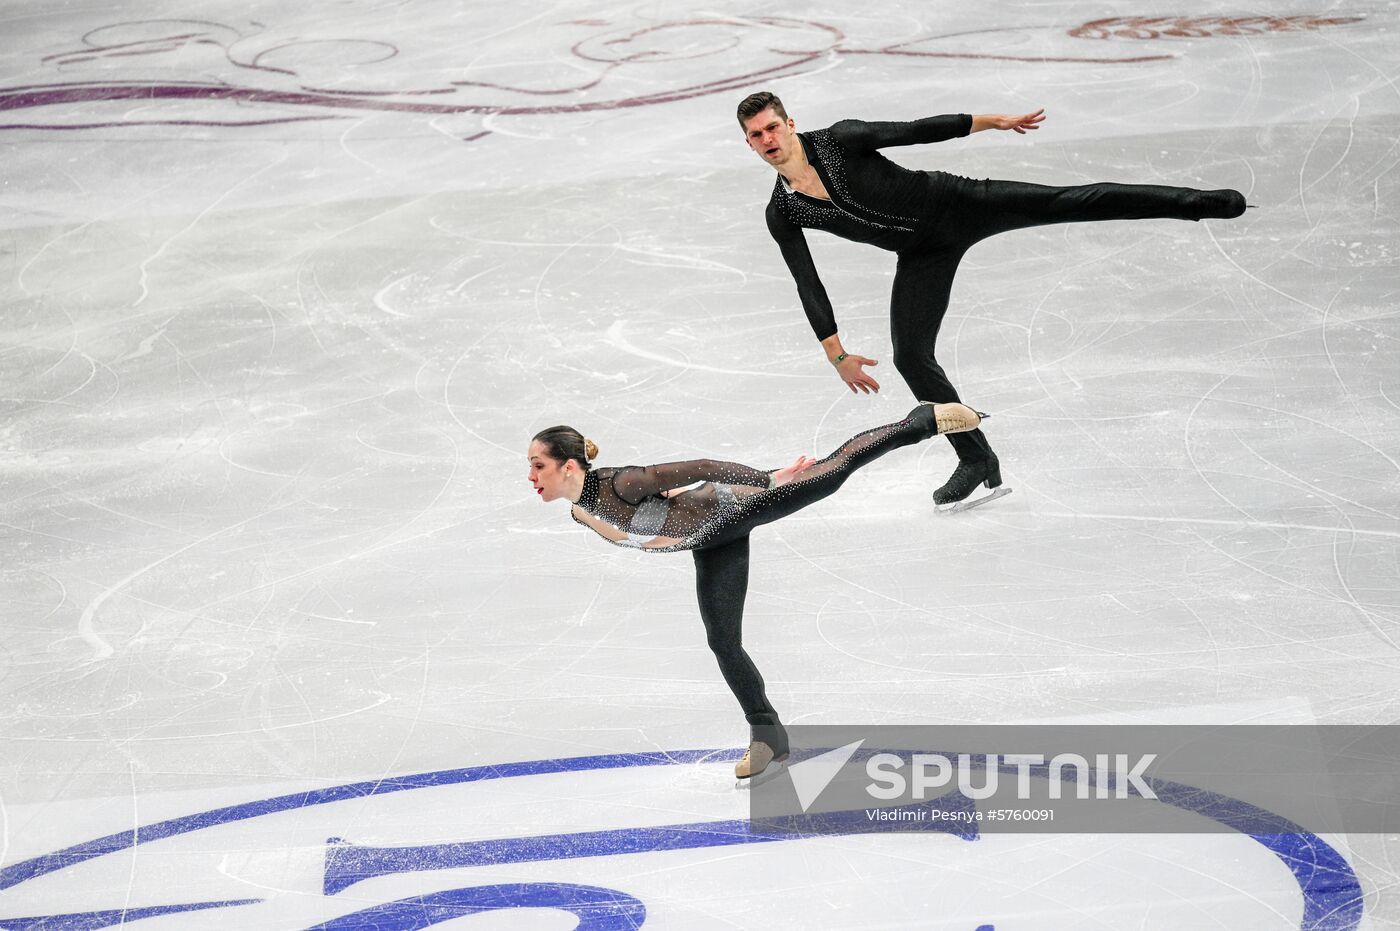 Belarus European Figure Skating Championships Pairs